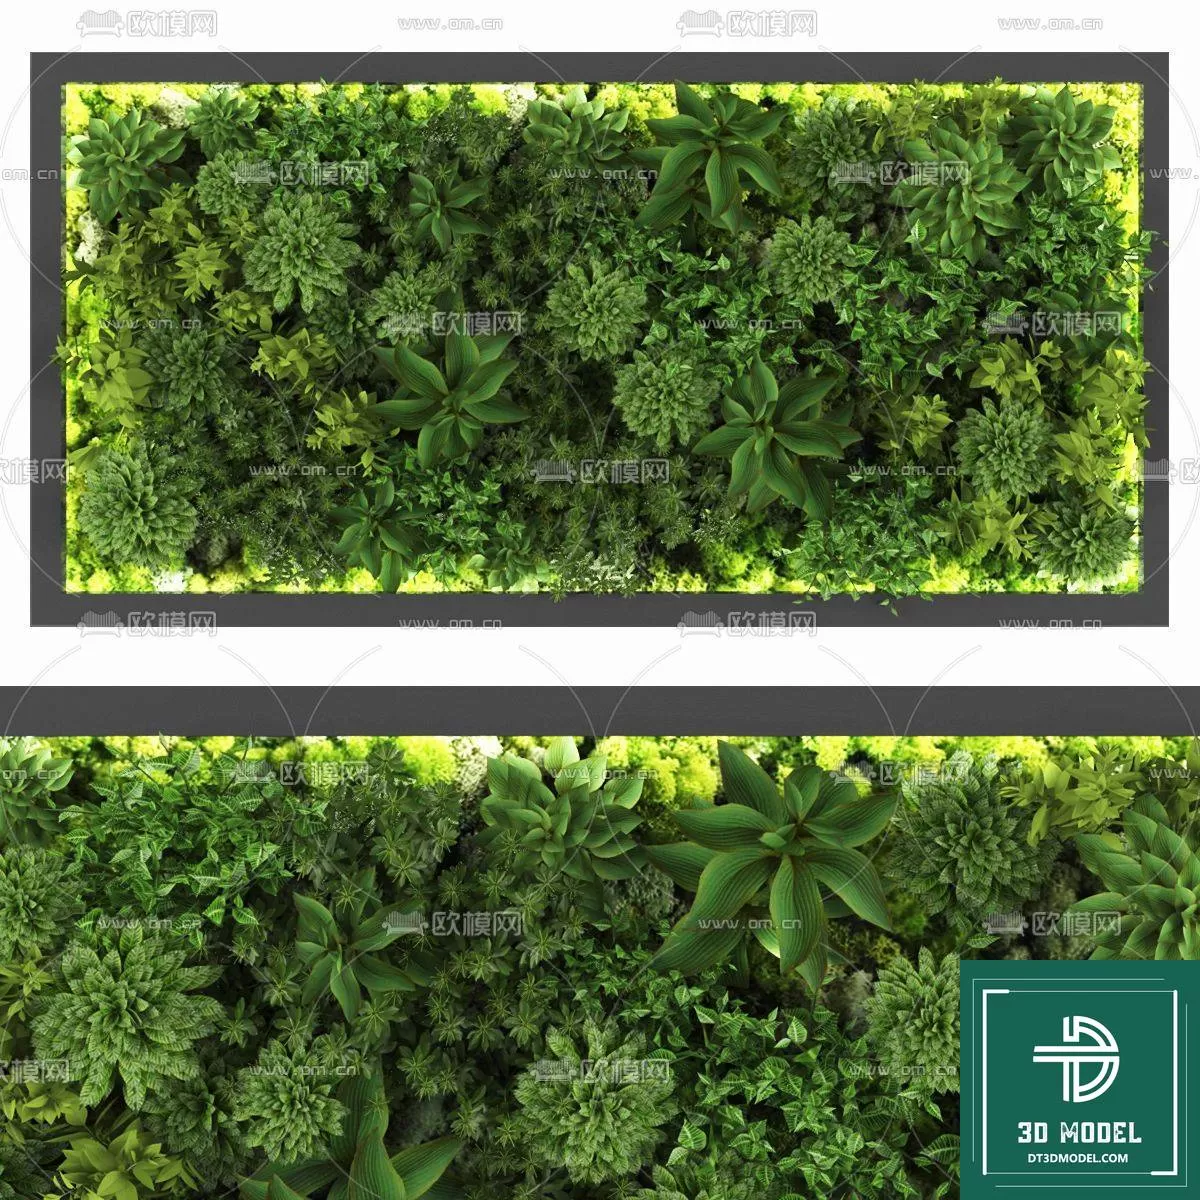 VERTICAL GARDEN – FITOWALL PLANT 3D MODEL – 086